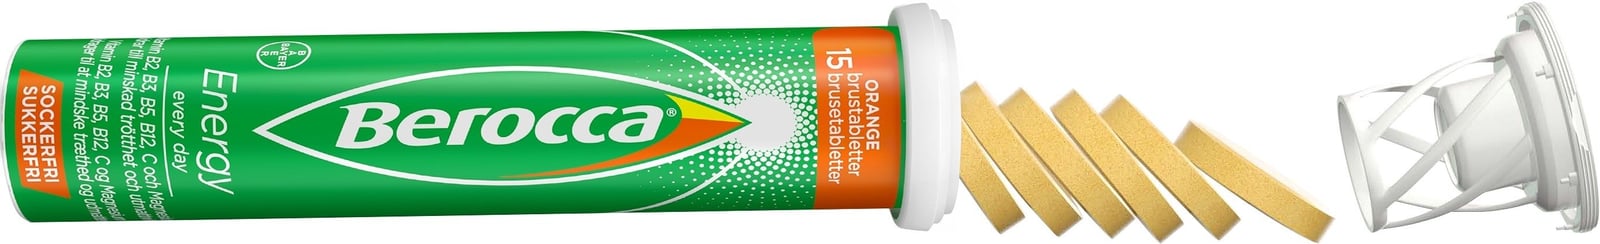 Berocca Energy Orange 45 brustabletter